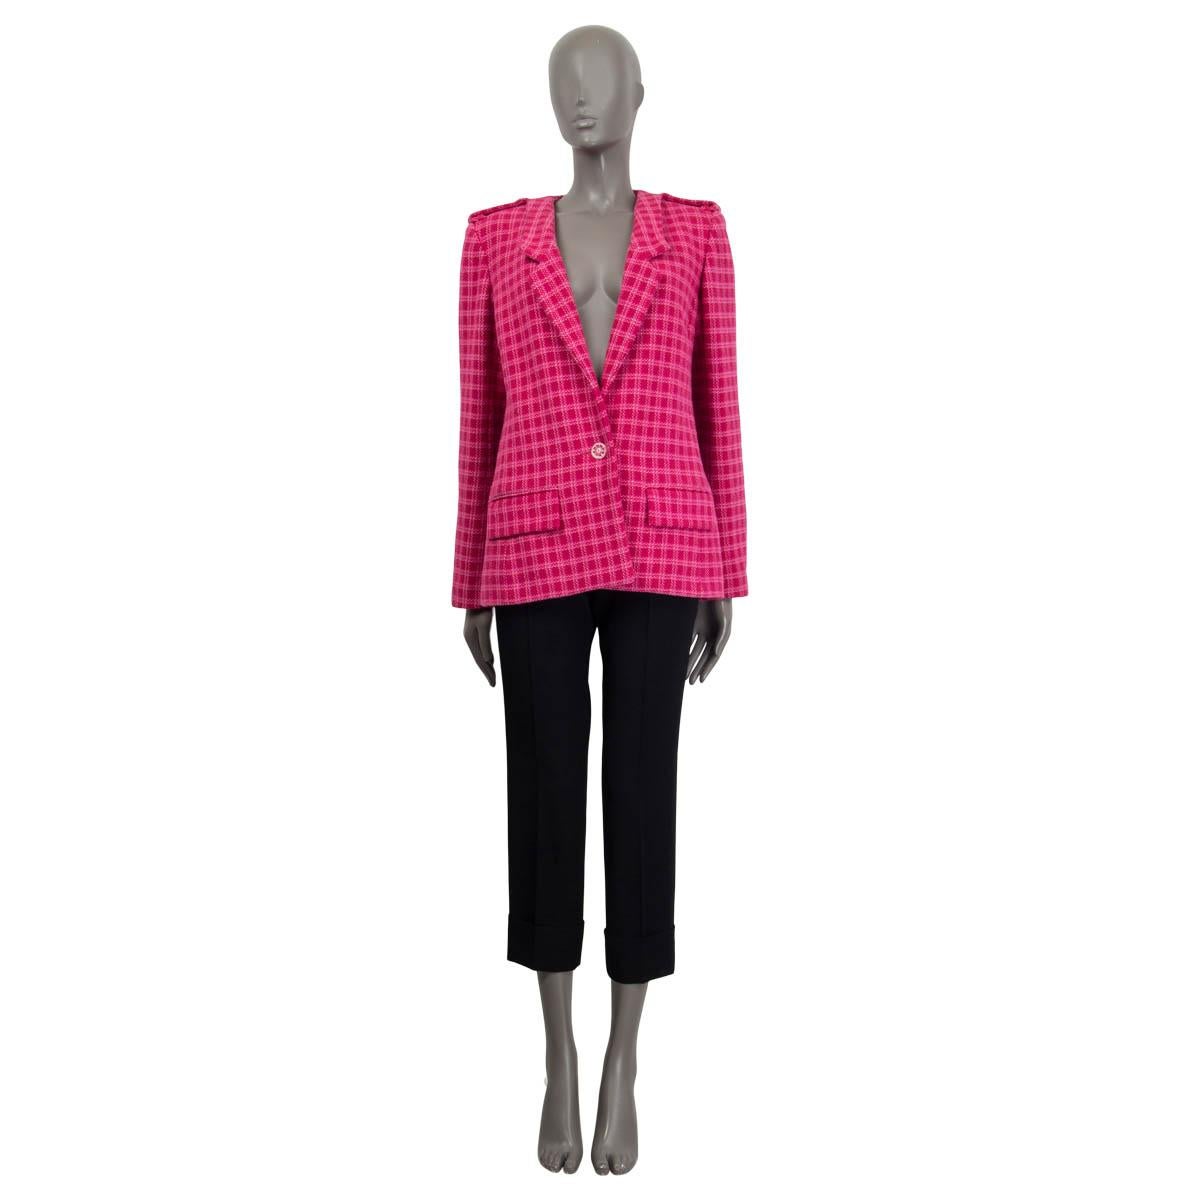 Blazer Chanel Cruise 2016 Séoul 100 % authentique en tweed surdimensionné à un bouton en coton rose (92%) et acrylique (8%). Ce modèle comporte des épaulettes sur les épaules et des manchettes boutonnées. Doté de deux poches à rabats cousus à